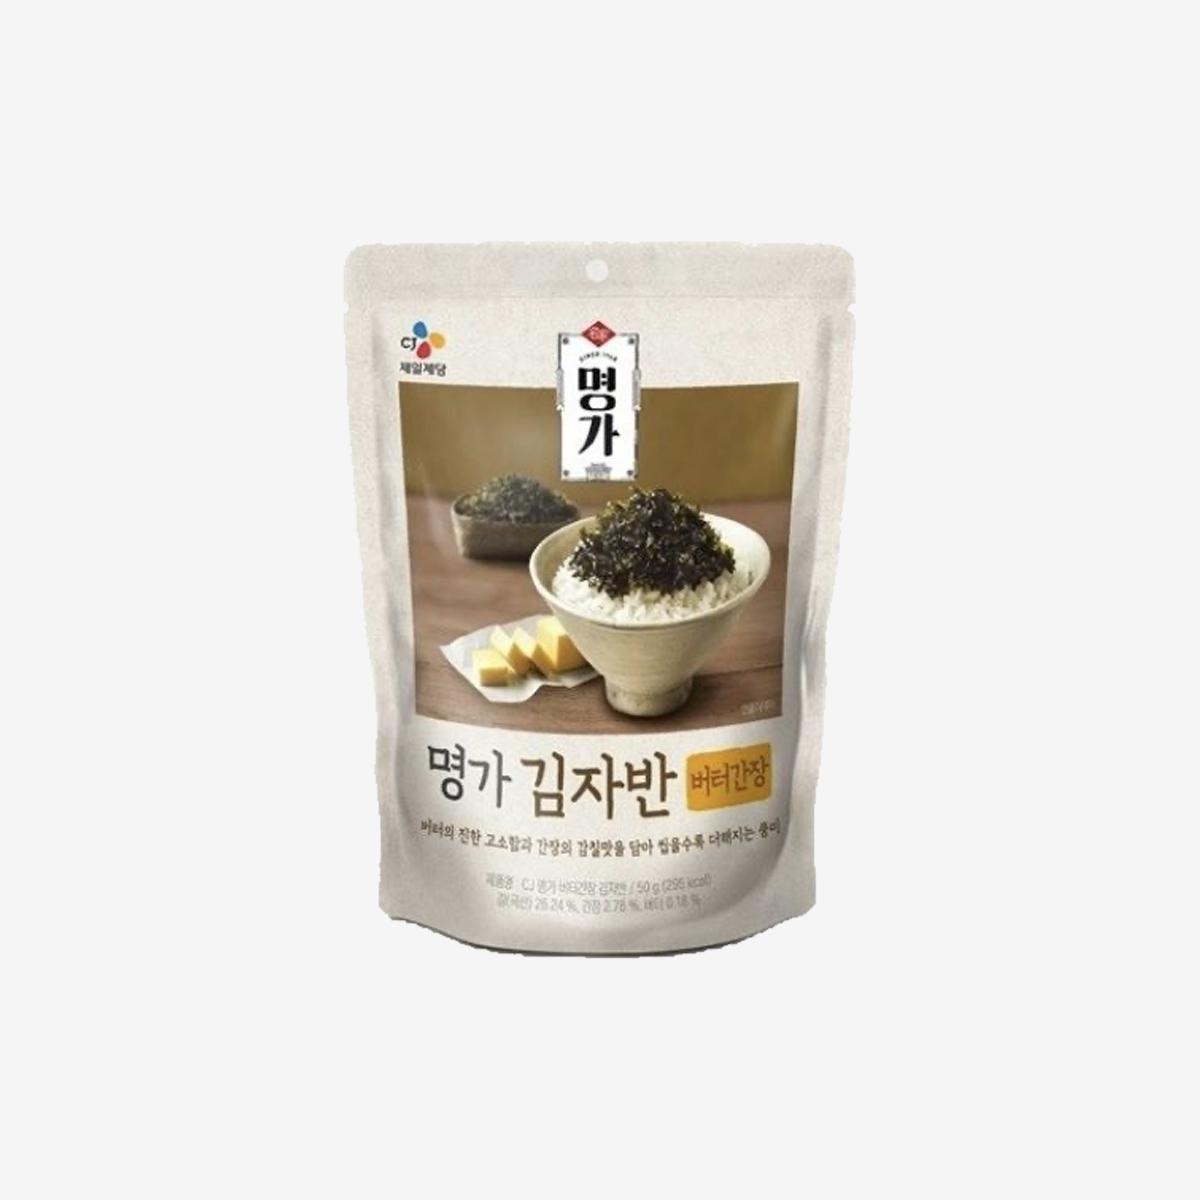 バター醤油 韓国海苔ふりかけ (50g)